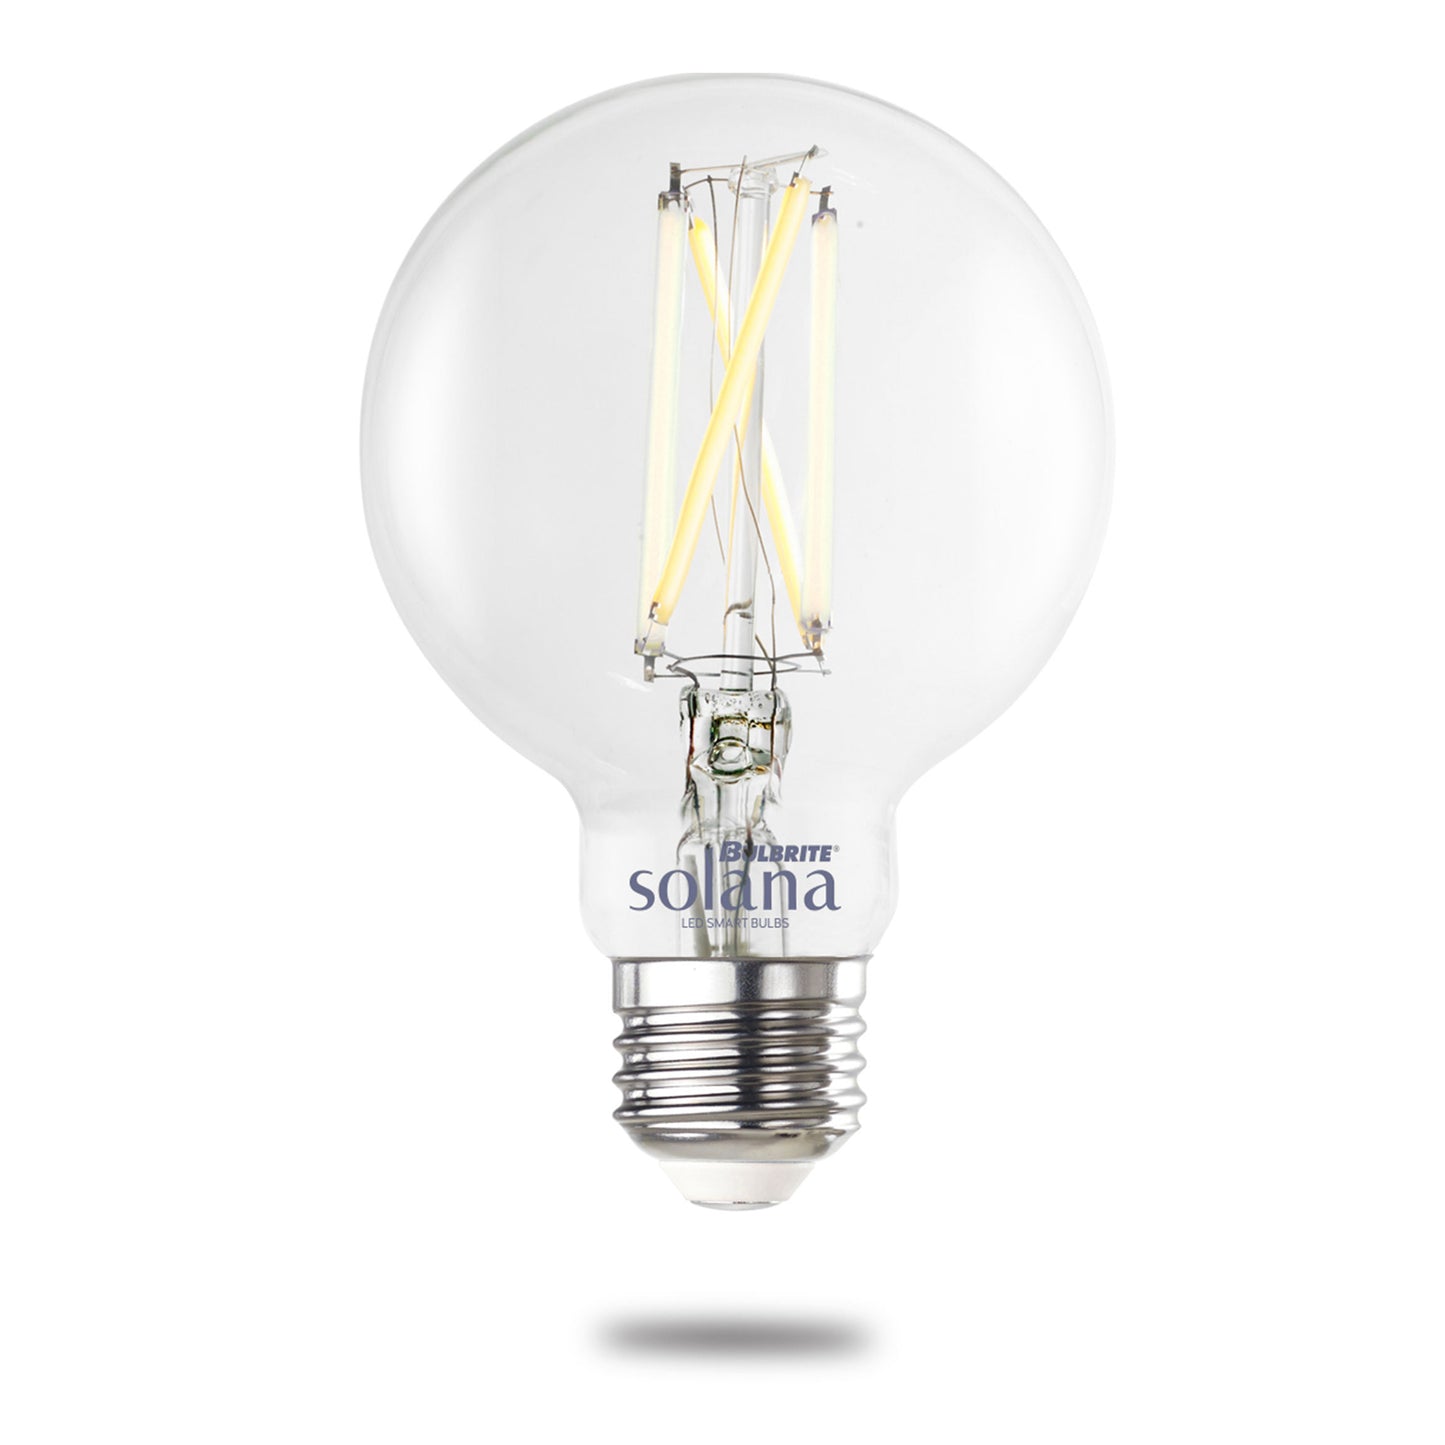 293125 - Wi-Fi Smart Tunable White G25 LED Light Bulb - 8 Watt - 2200K-6500K - 2 Pack